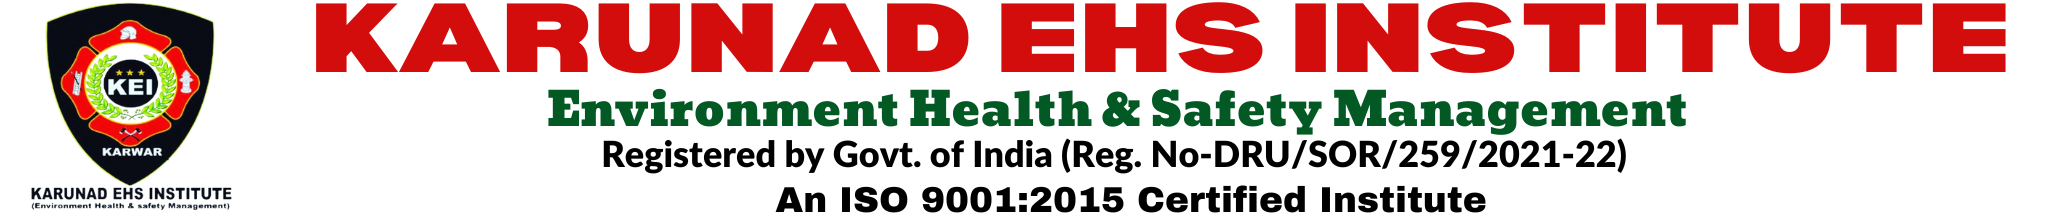 Karunad EHS Institute Logo